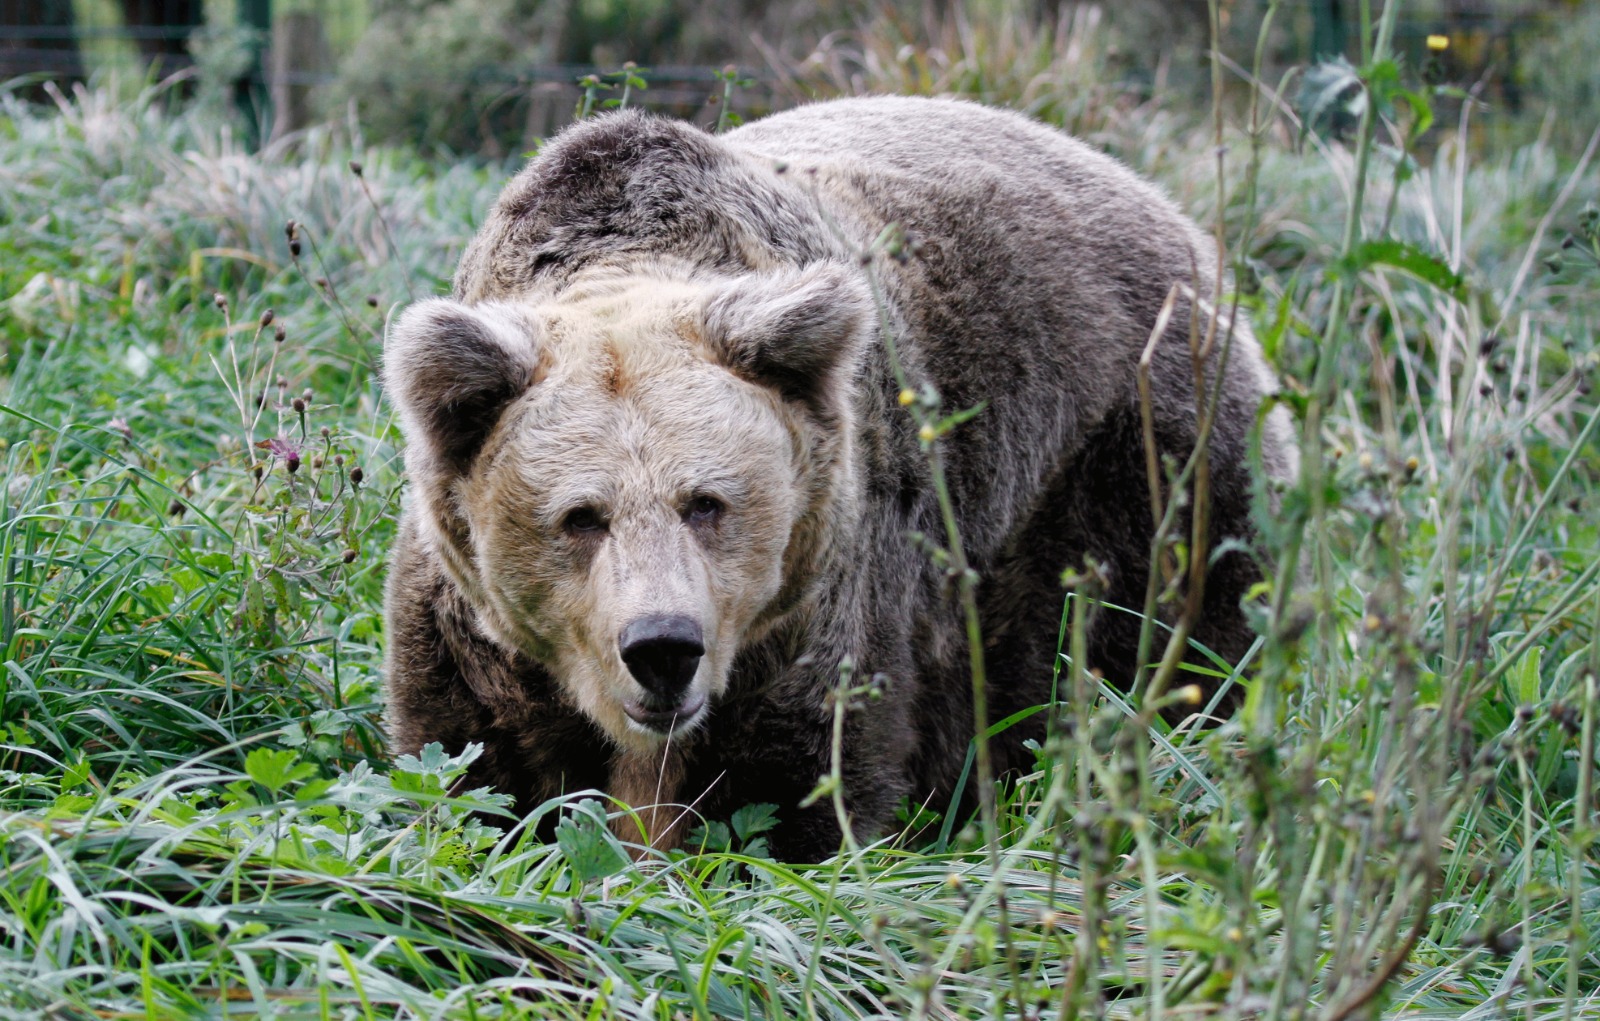 La Fundación Oso de Asturias inicia un estudio sobre el comportamiento de los osos jóvenes rehabilitados en Europa